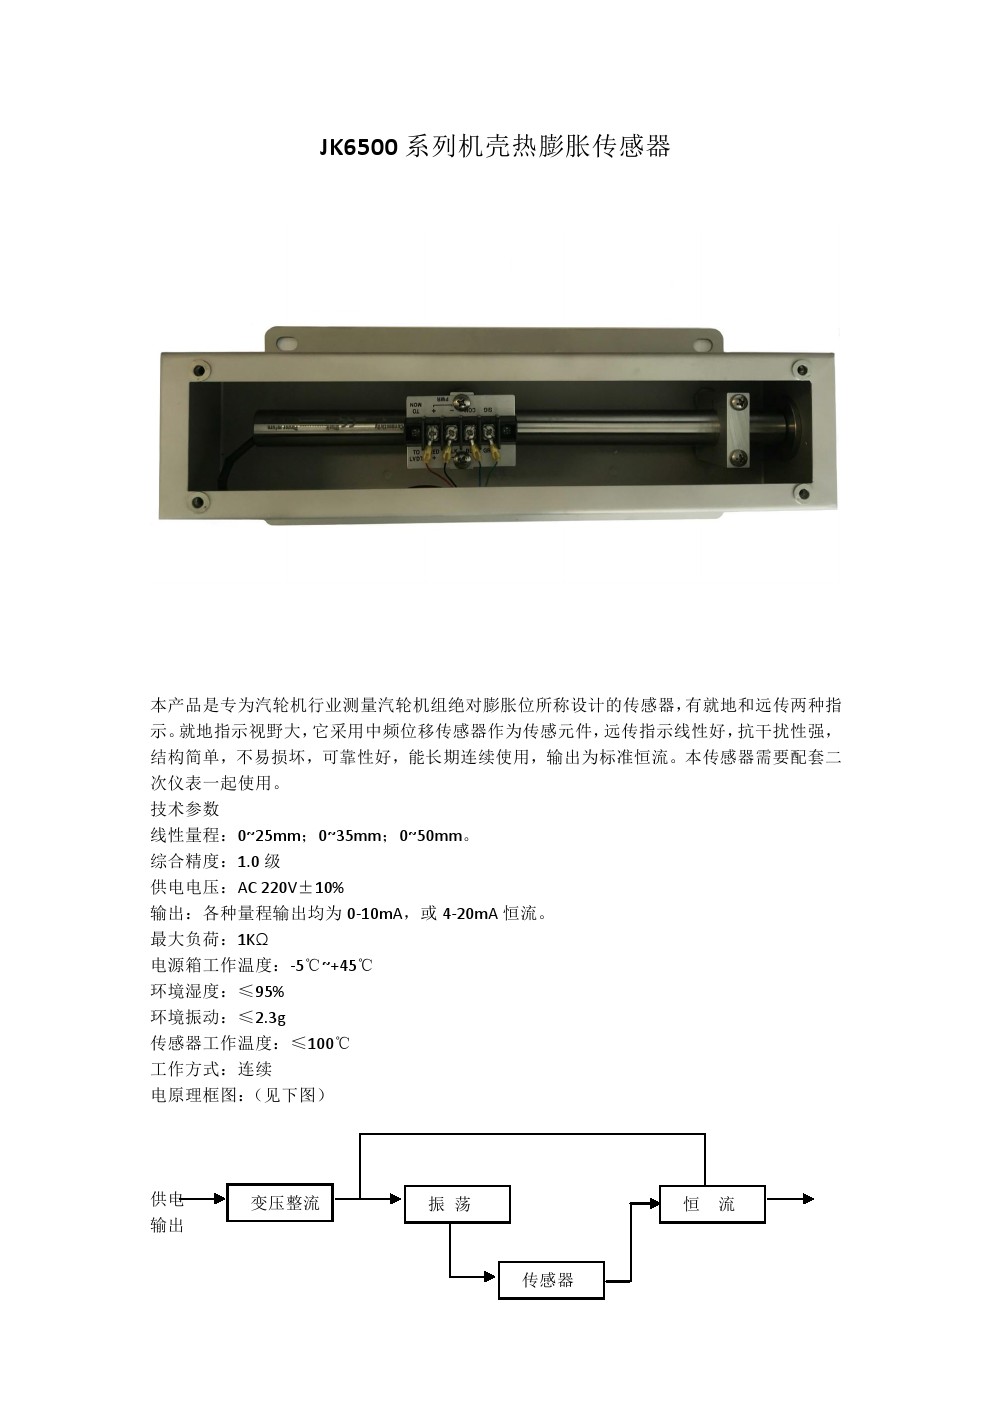 JK6500系列机壳热膨胀传感器